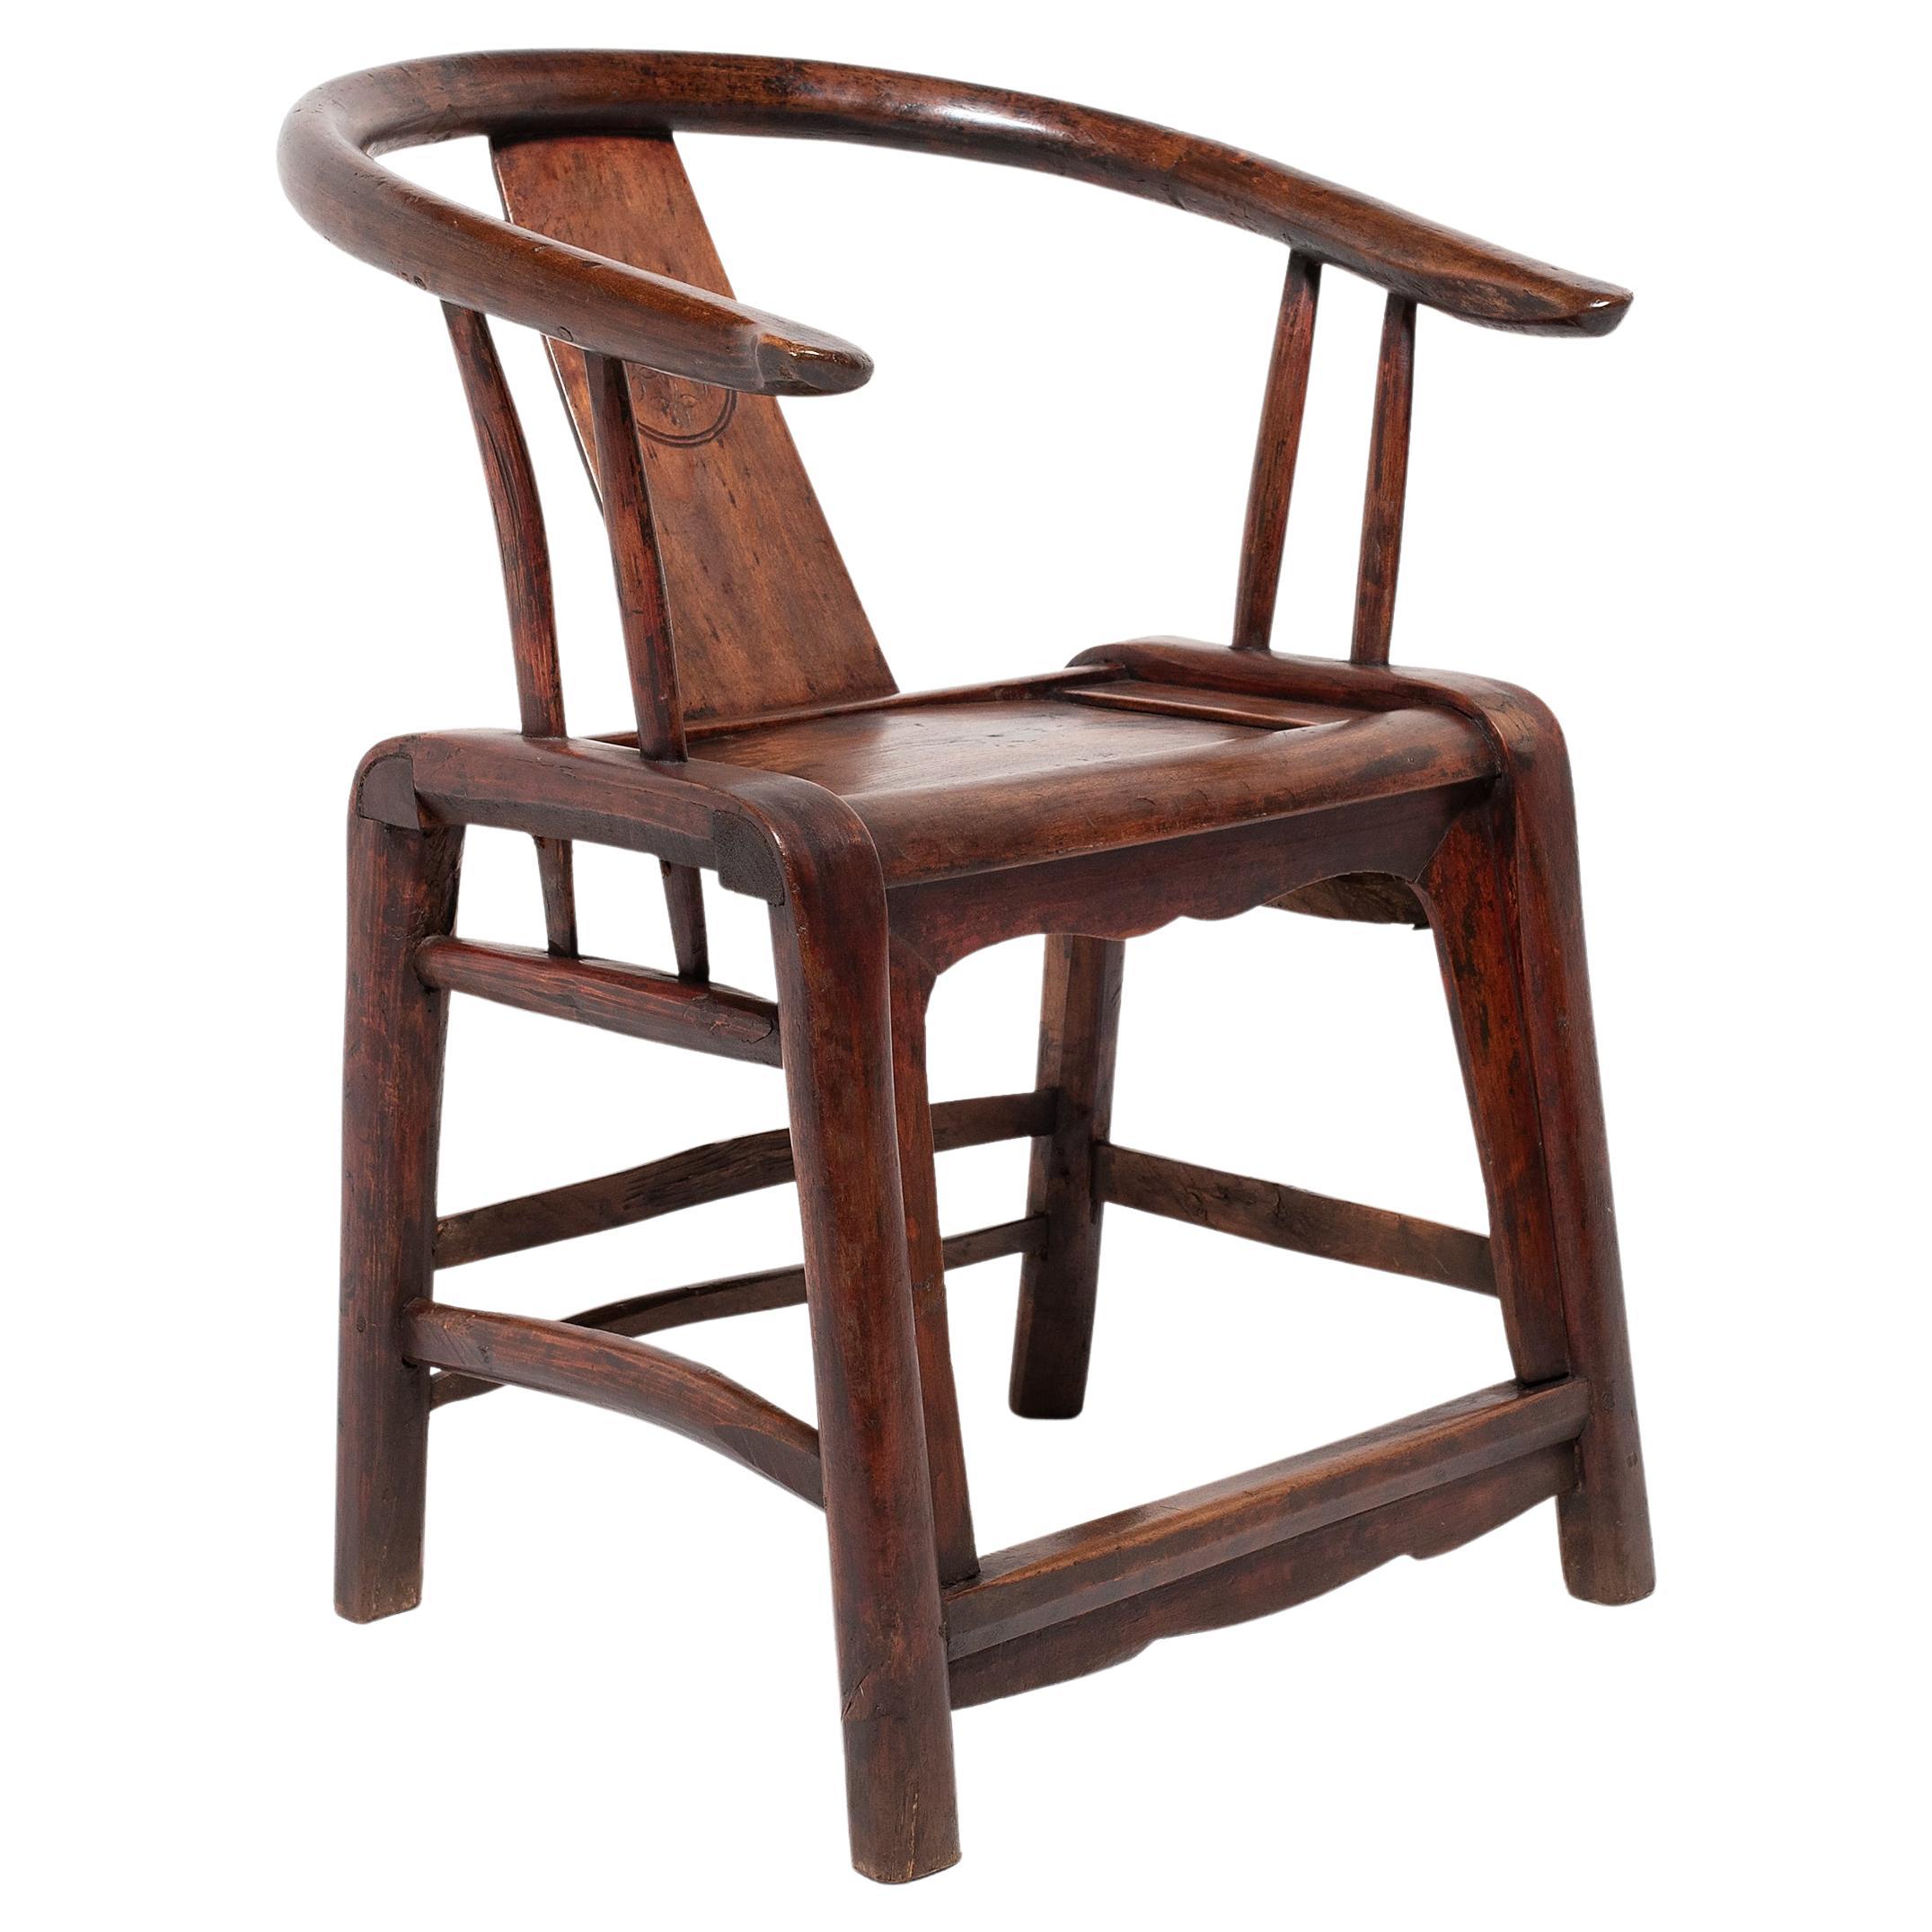 Chinesischer lackierter Stuhl mit runder Rückenlehne, um 1850